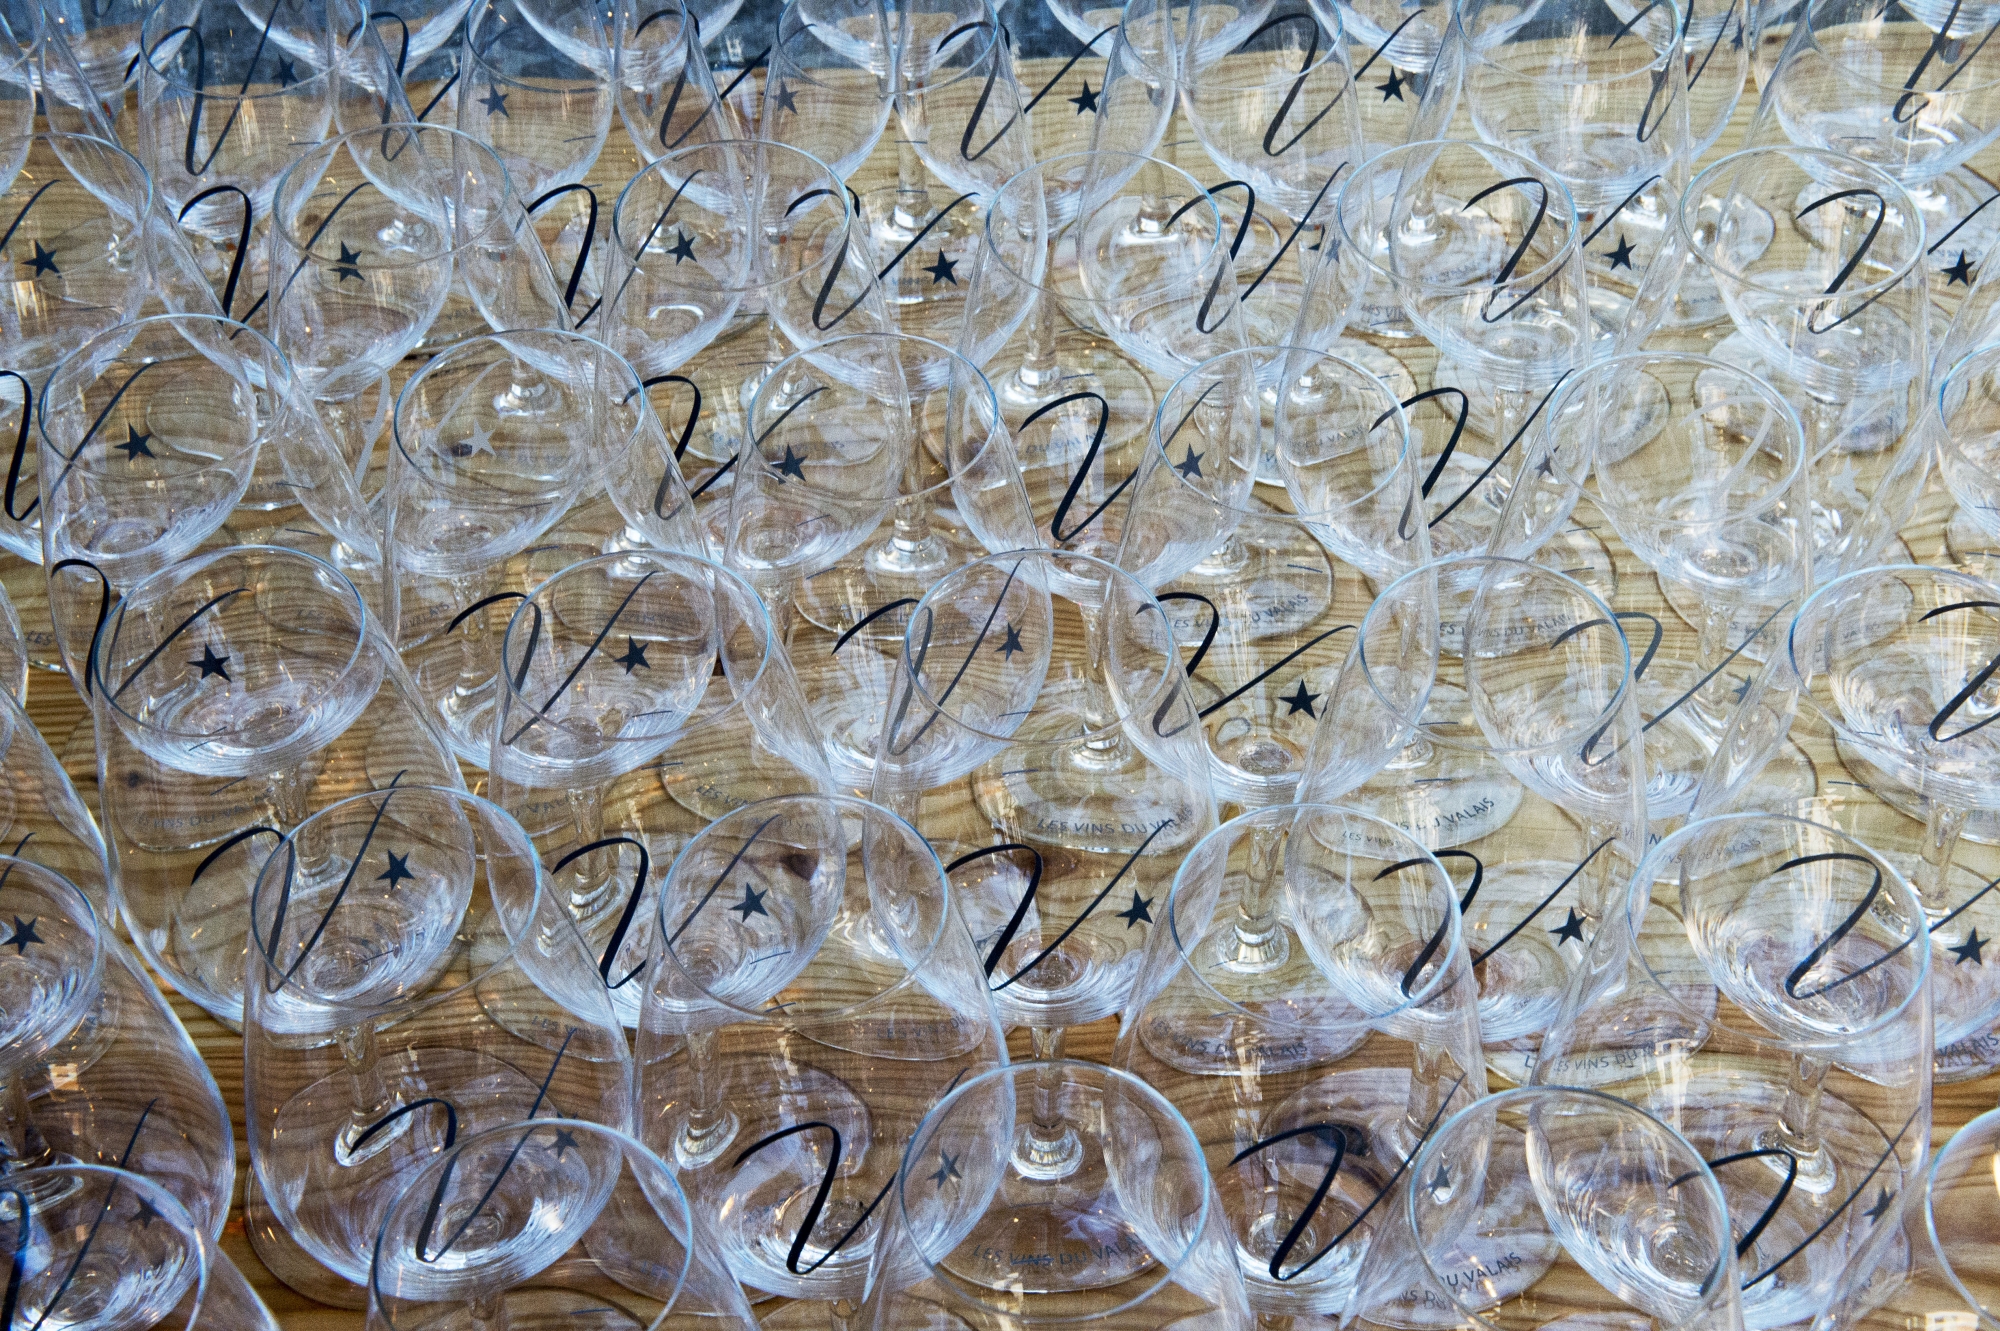 La meilleure façon d'aider les vignerons valaisans touchés par le gel est de boire valaisan, selon l'interprofession des vins du Valais.